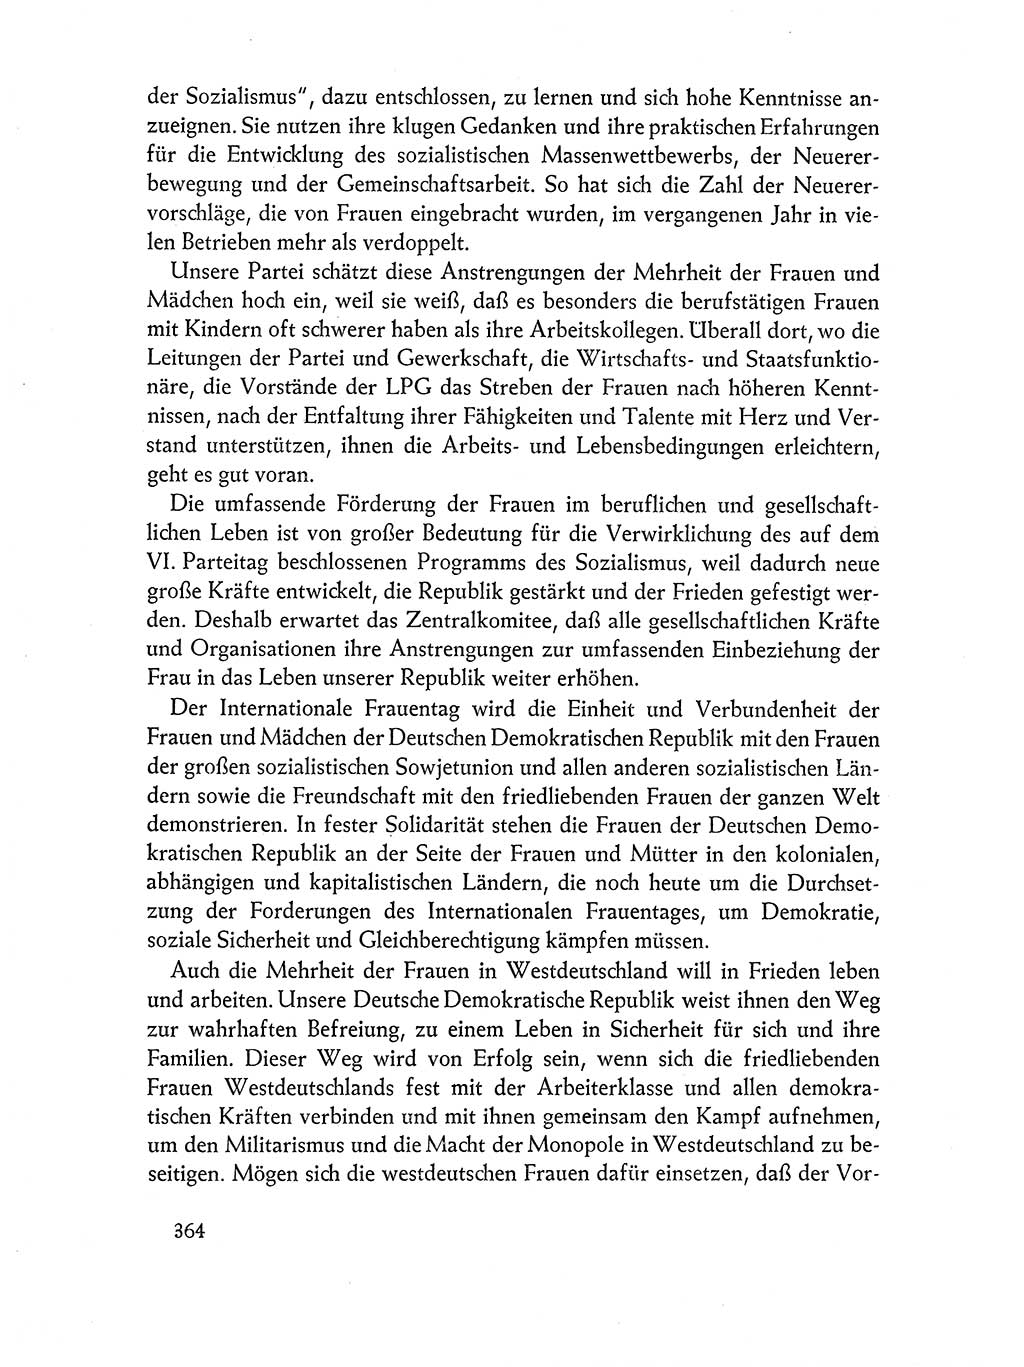 Dokumente der Sozialistischen Einheitspartei Deutschlands (SED) [Deutsche Demokratische Republik (DDR)] 1962-1963, Seite 364 (Dok. SED DDR 1962-1963, S. 364)